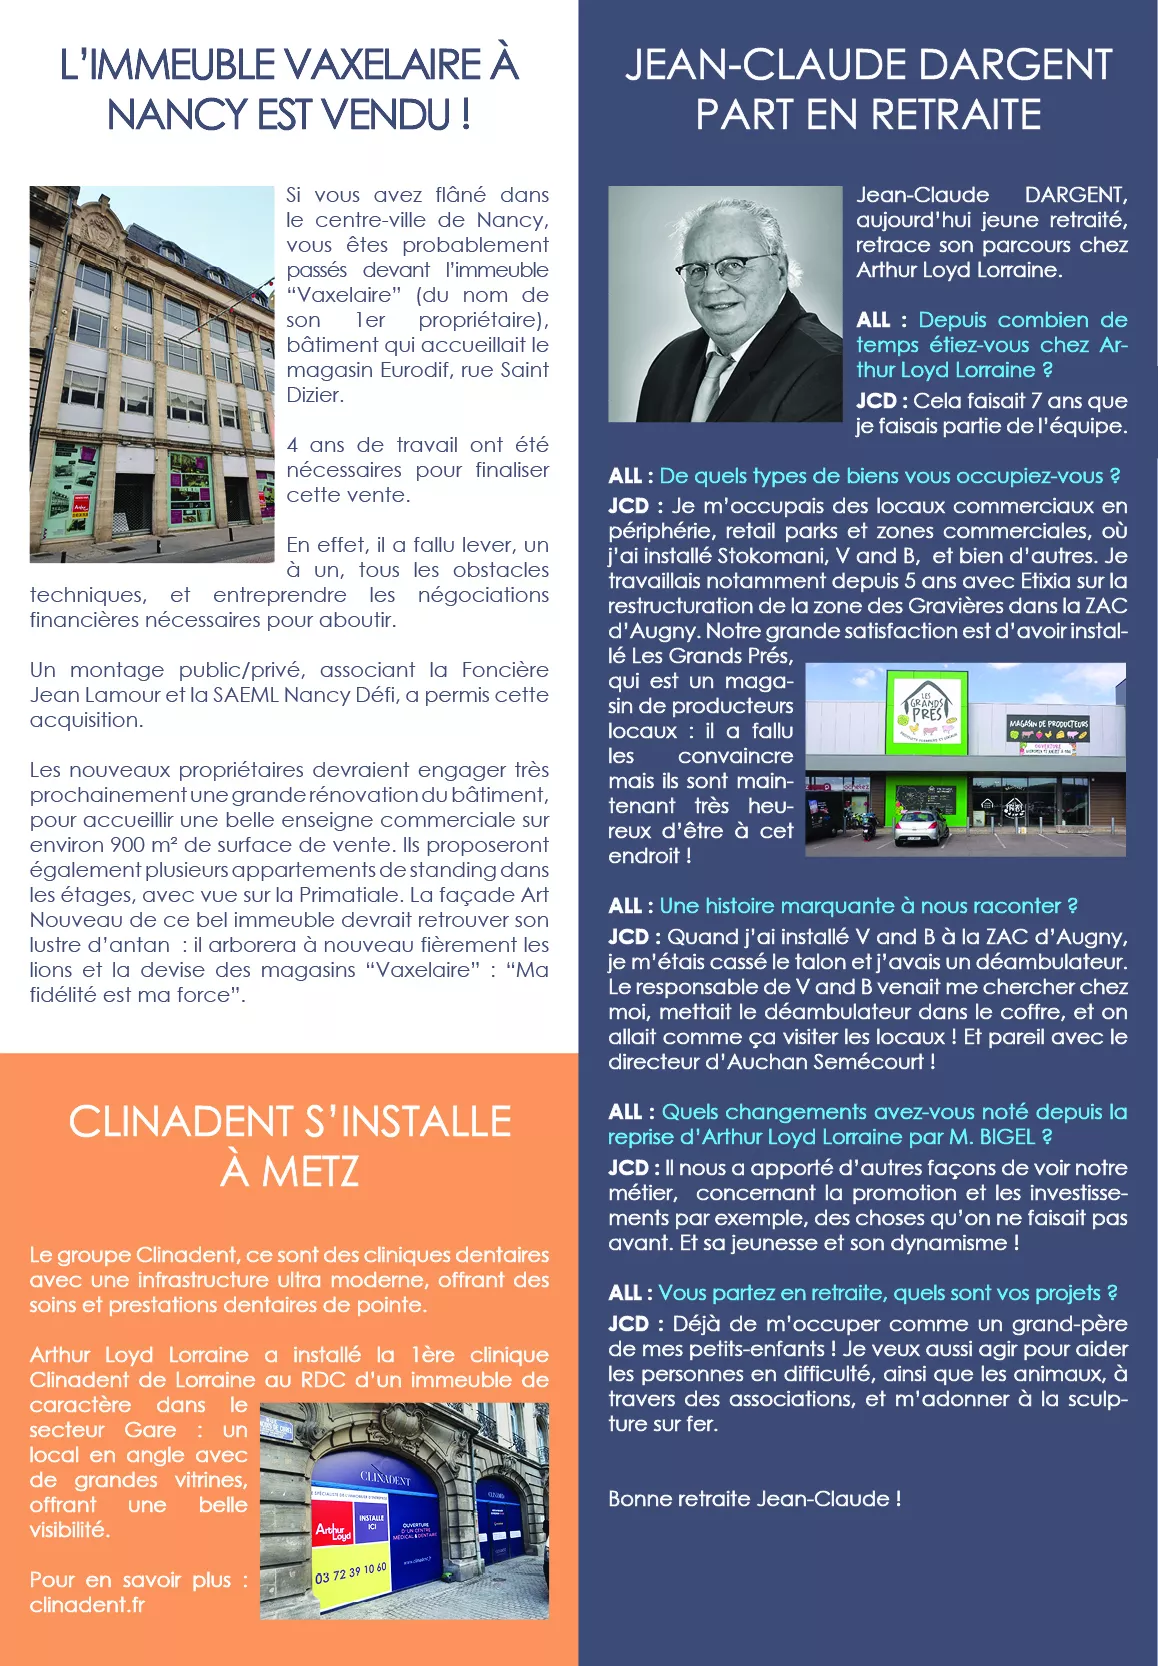 Solutions d'Entreprise - Vaxelaire, Clinadent et Jean-Claude DARGENT